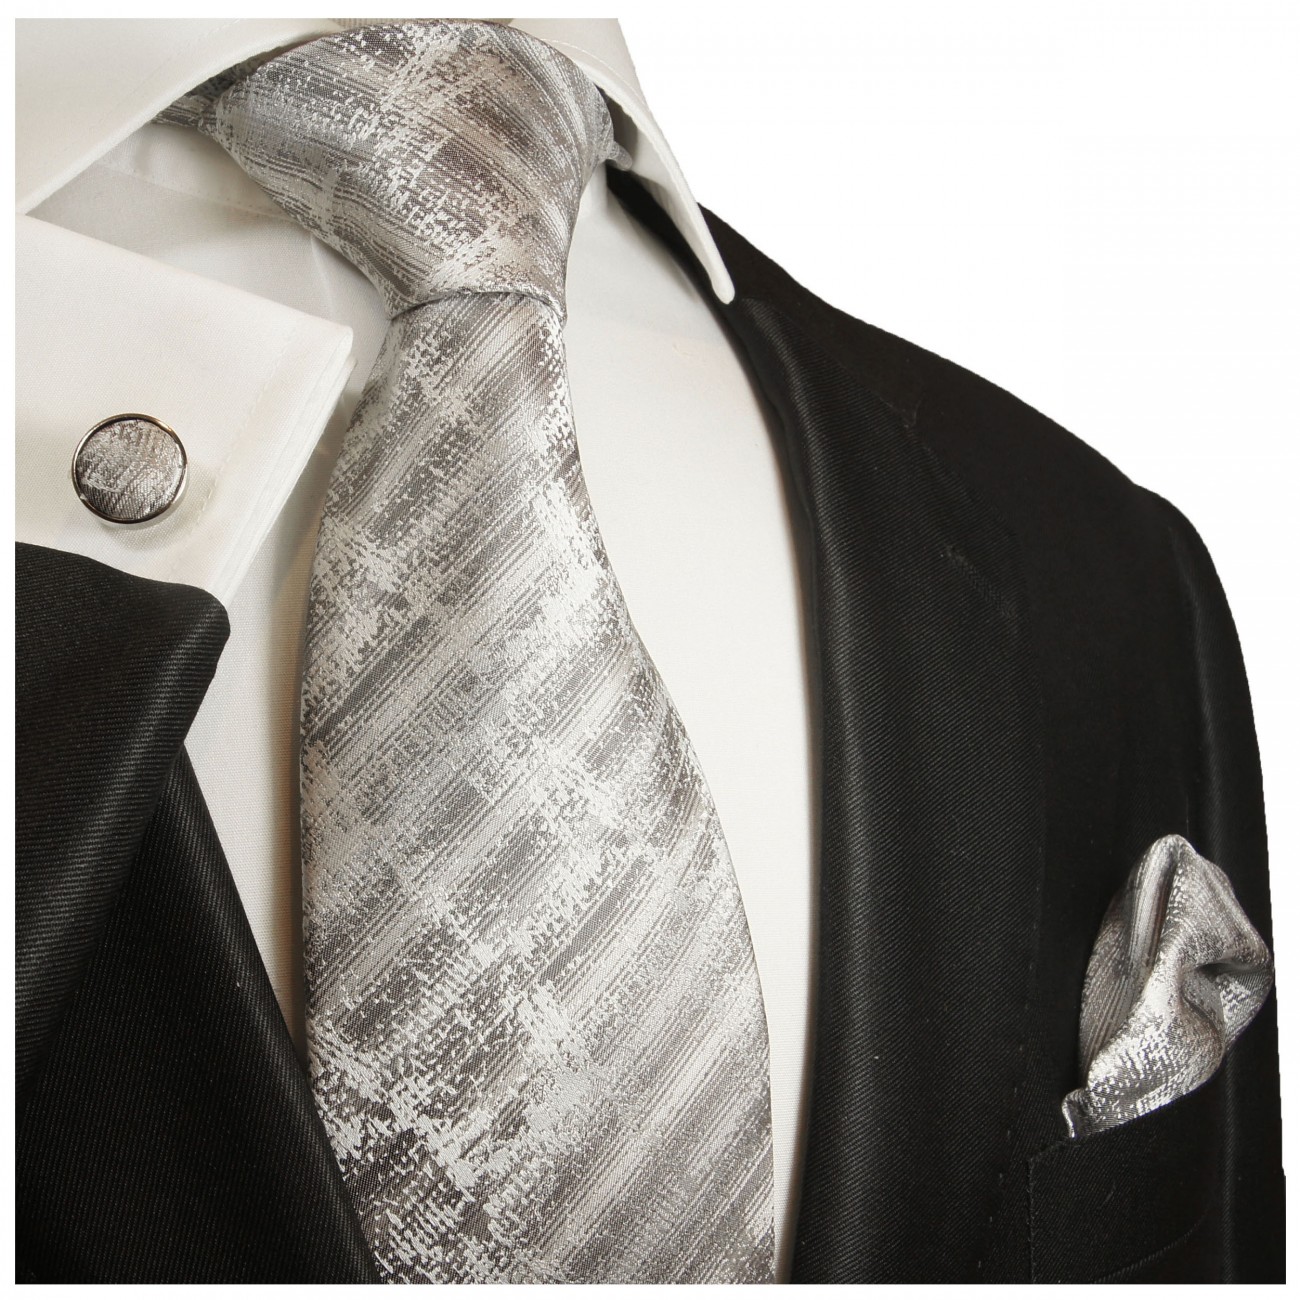 Krawatte weiß grau gestreift Seide mit Einstecktuch und Manschettenknöpfe